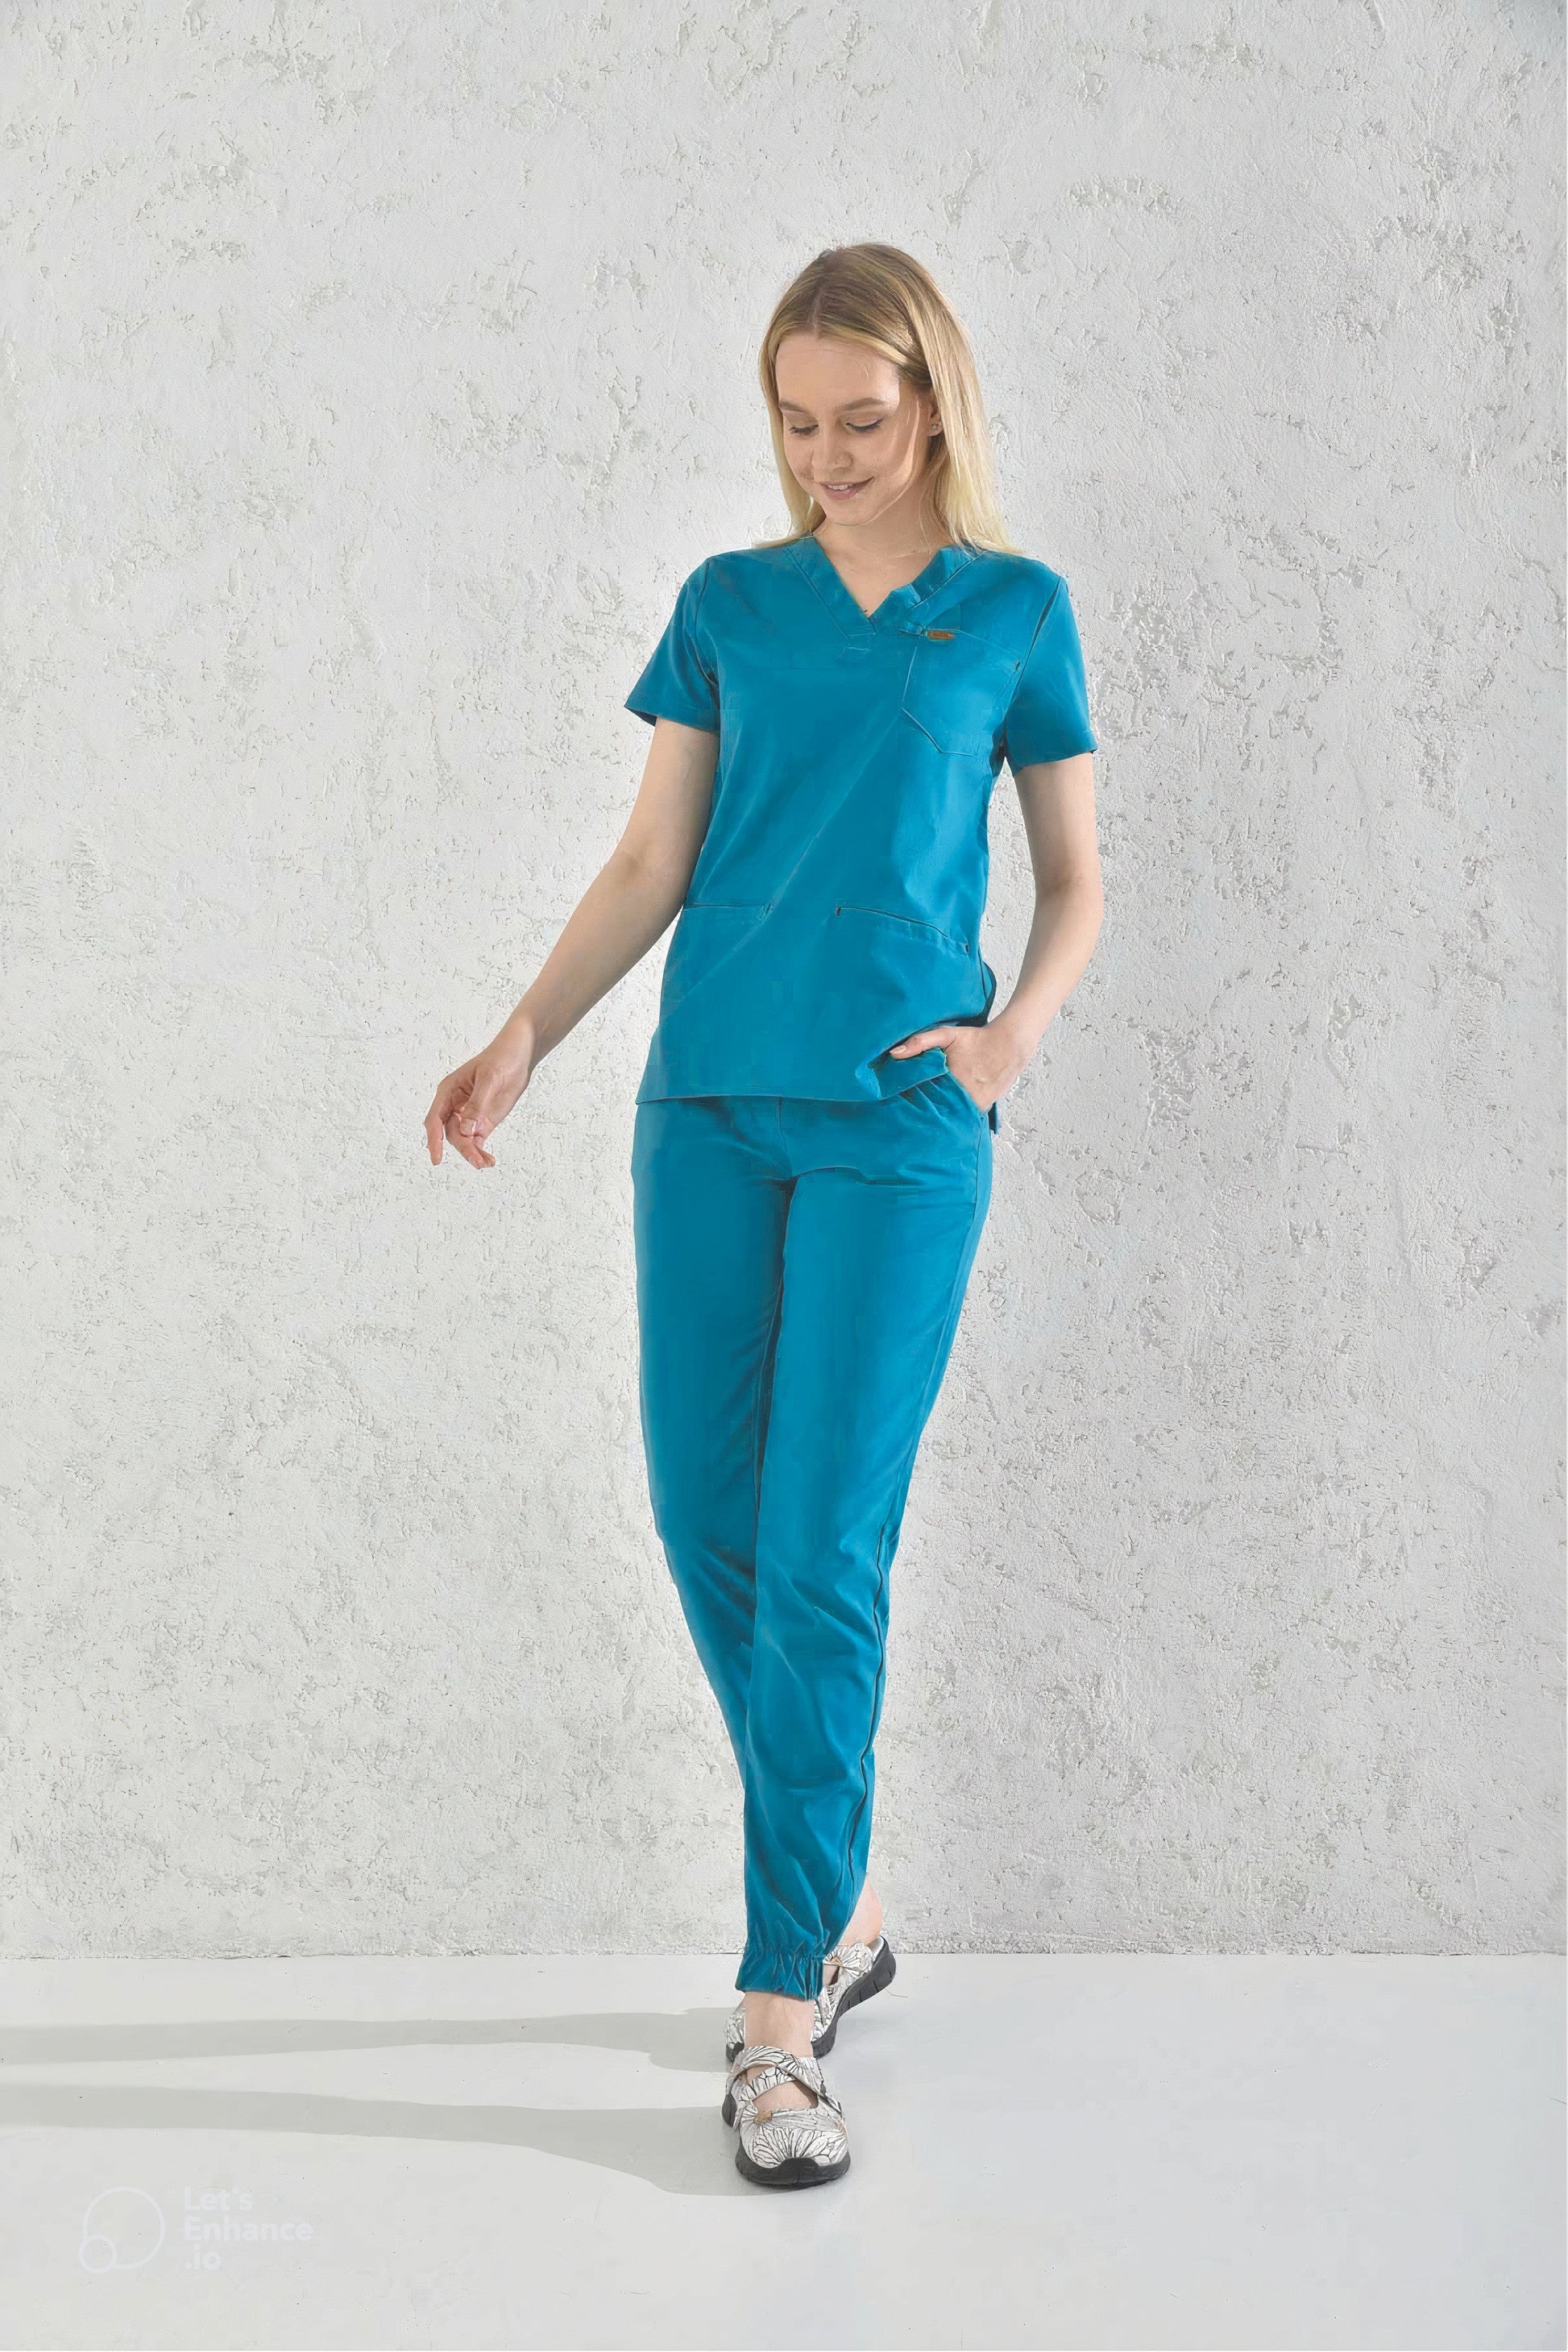 Femme en pantalon médical bleu cyan, tenues médicales slimfit